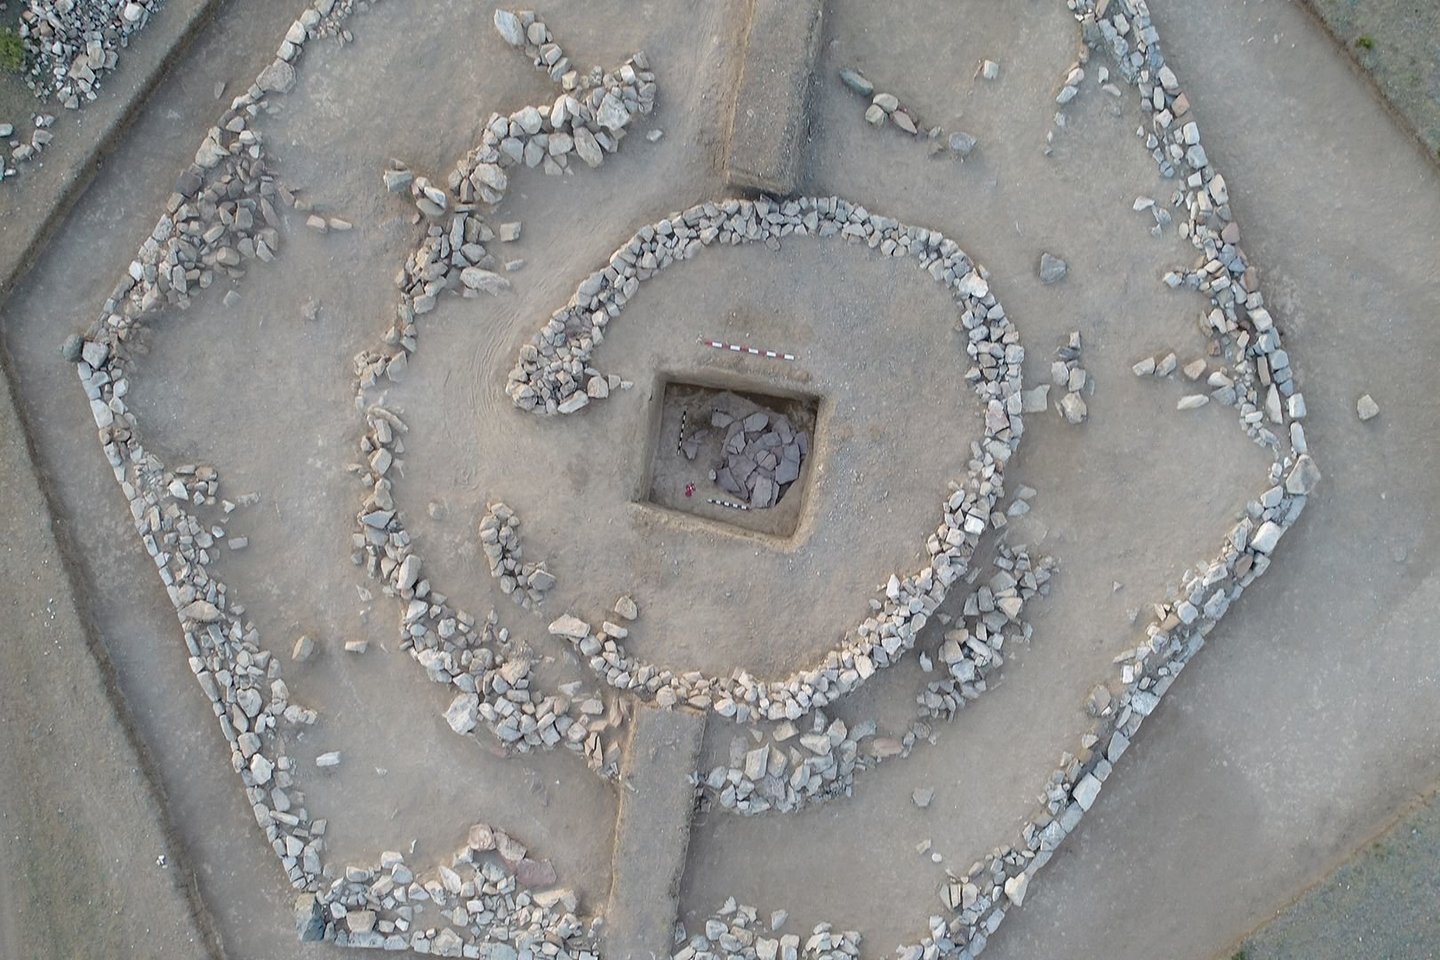  Šešiakampės piramidės vaizdas iš paukščio skrydžio. Atkreipkite dėmesį, kad vidinės akmeninės sienos sudaro labirintą primenantį kelią, vedantį link centre esančios laidojimo vietos.<br> U.Umitkalijevo nuotr.